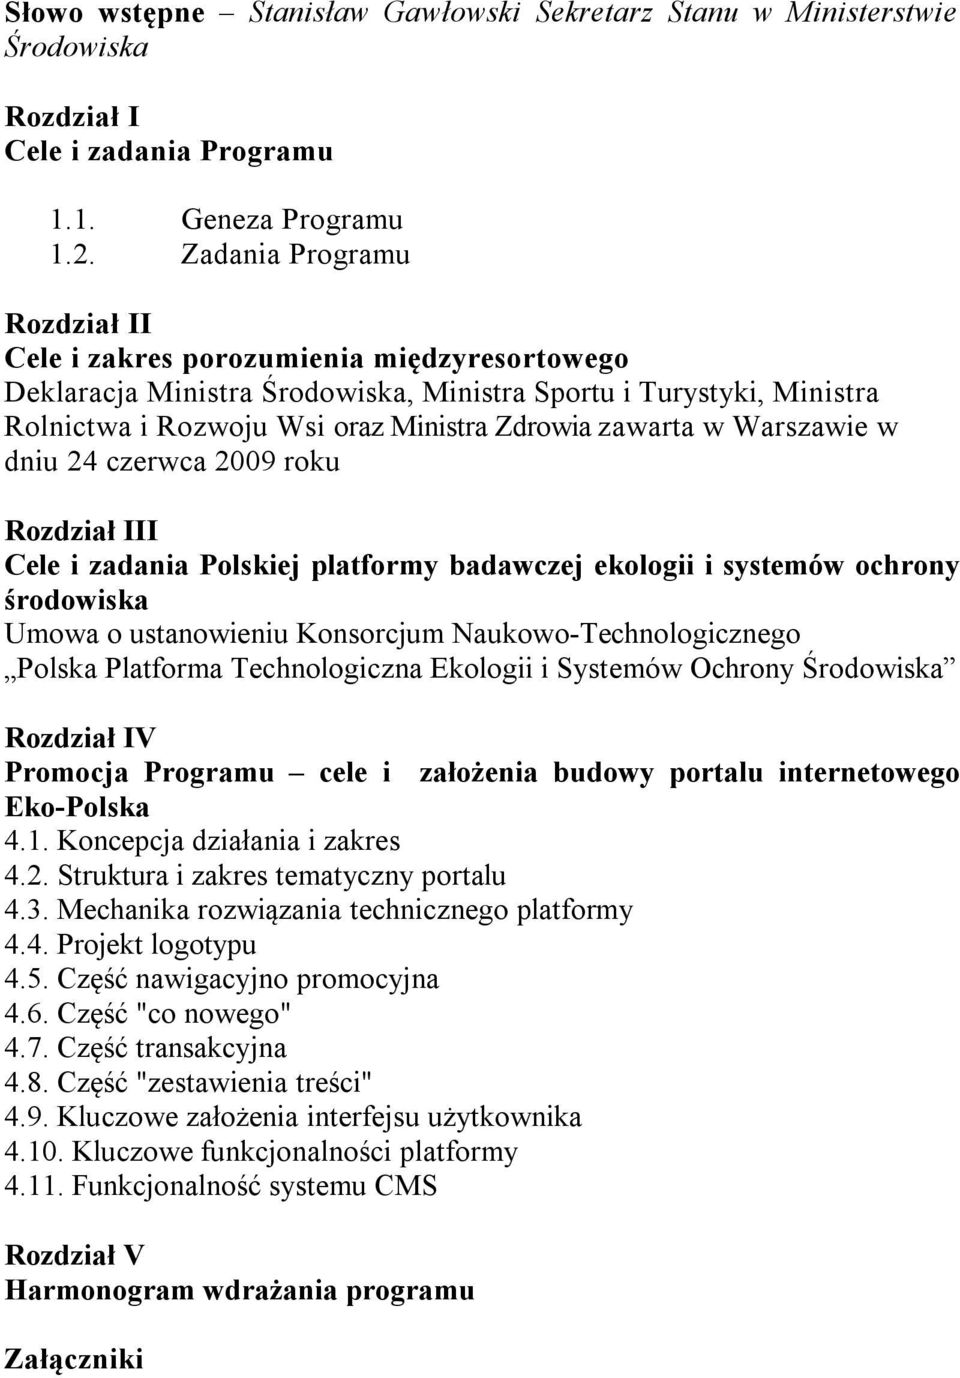 Warszawie w dniu 24 czerwca 2009 roku Rozdział III Cele i zadania Polskiej platformy badawczej ekologii i systemów ochrony środowiska Umowa o ustanowieniu Konsorcjum Naukowo-Technologicznego Polska